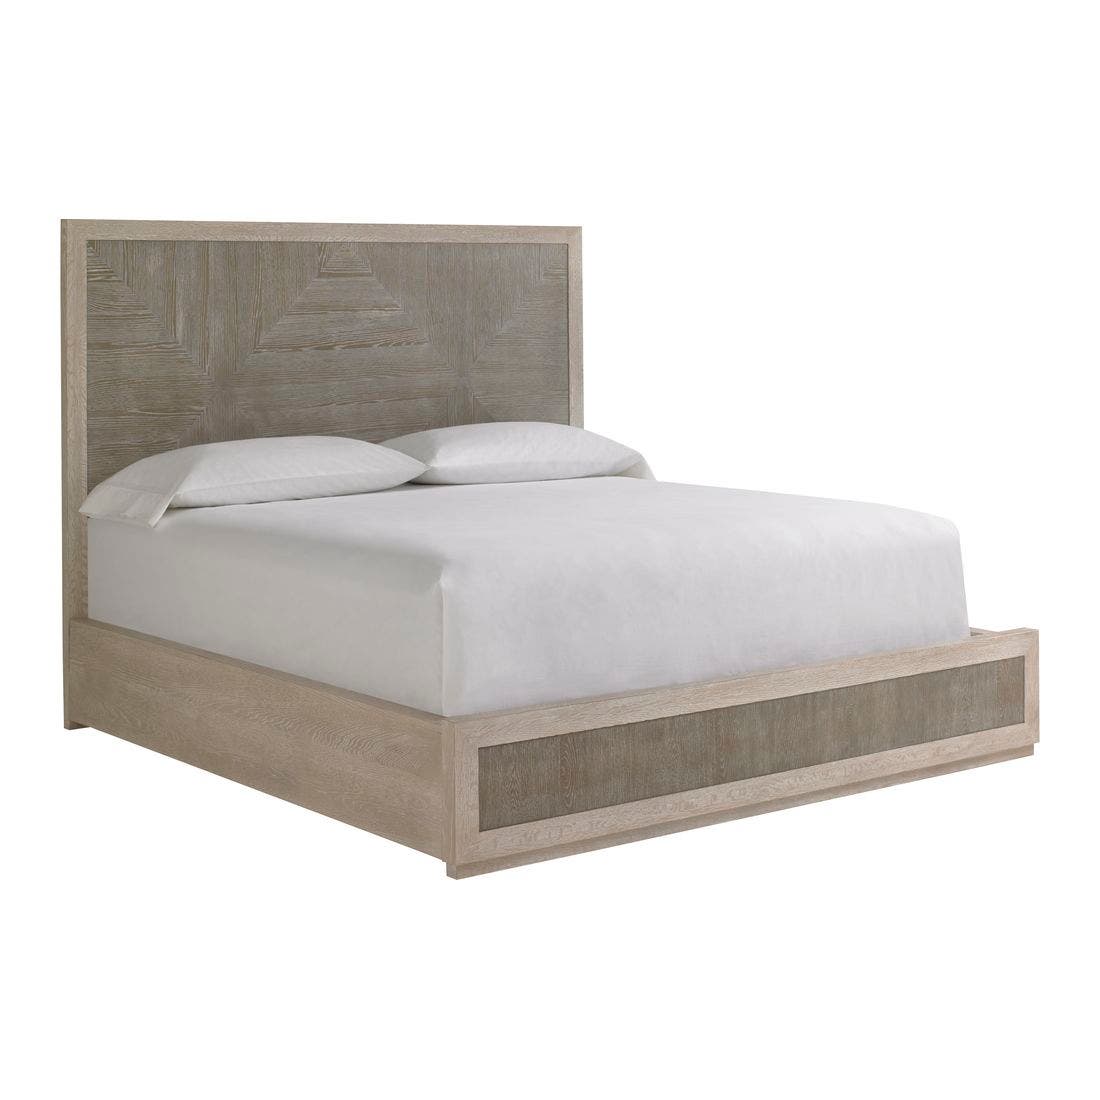 19170522-modern-quartz-furniture-bedroom-furniture-beds-01